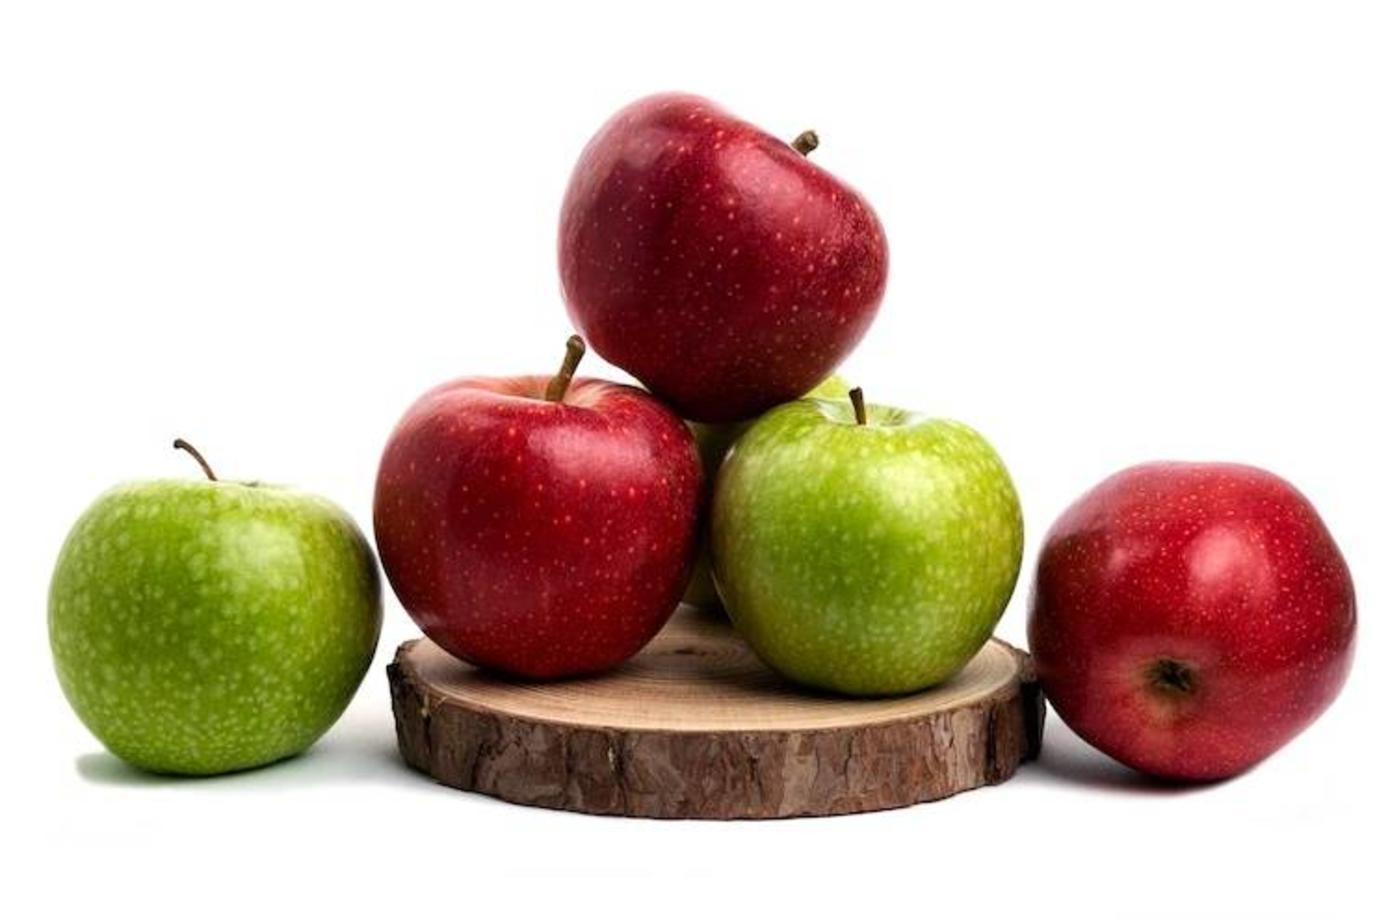 يحتوي التفاح على ألياف البكتين التي تعمل على تحسين عملية الهضم